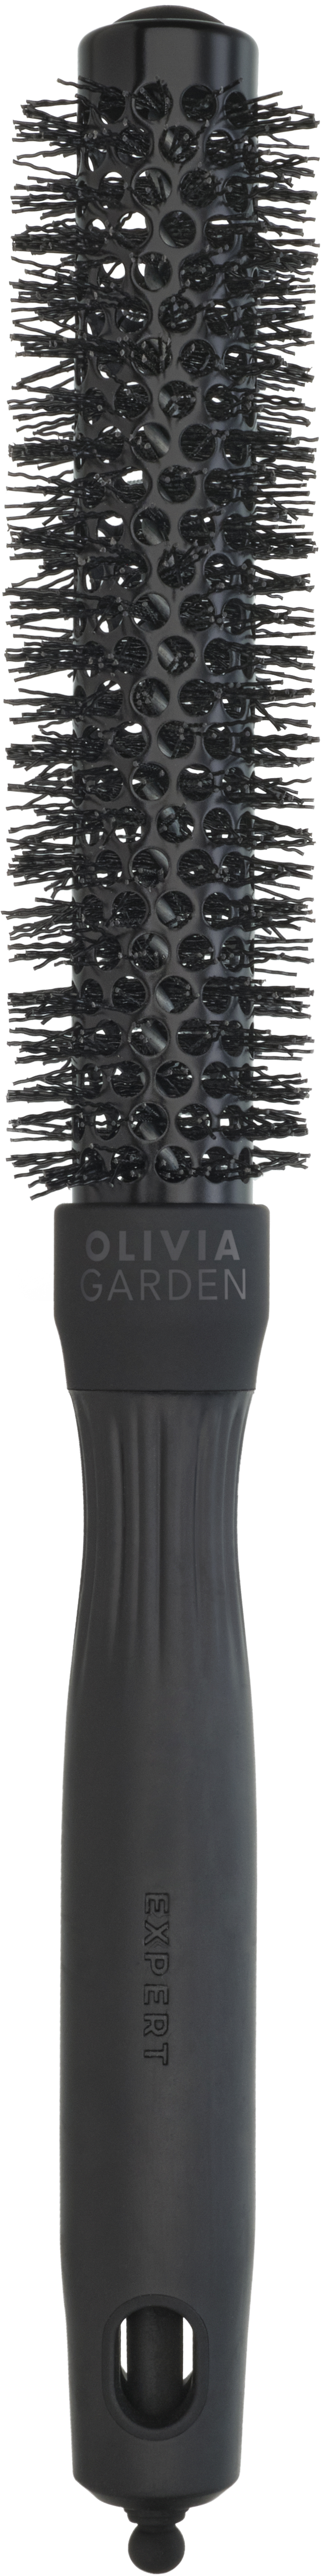 Olivia Garden Expert Blowout Speed Wavy Bristles Black Label 20